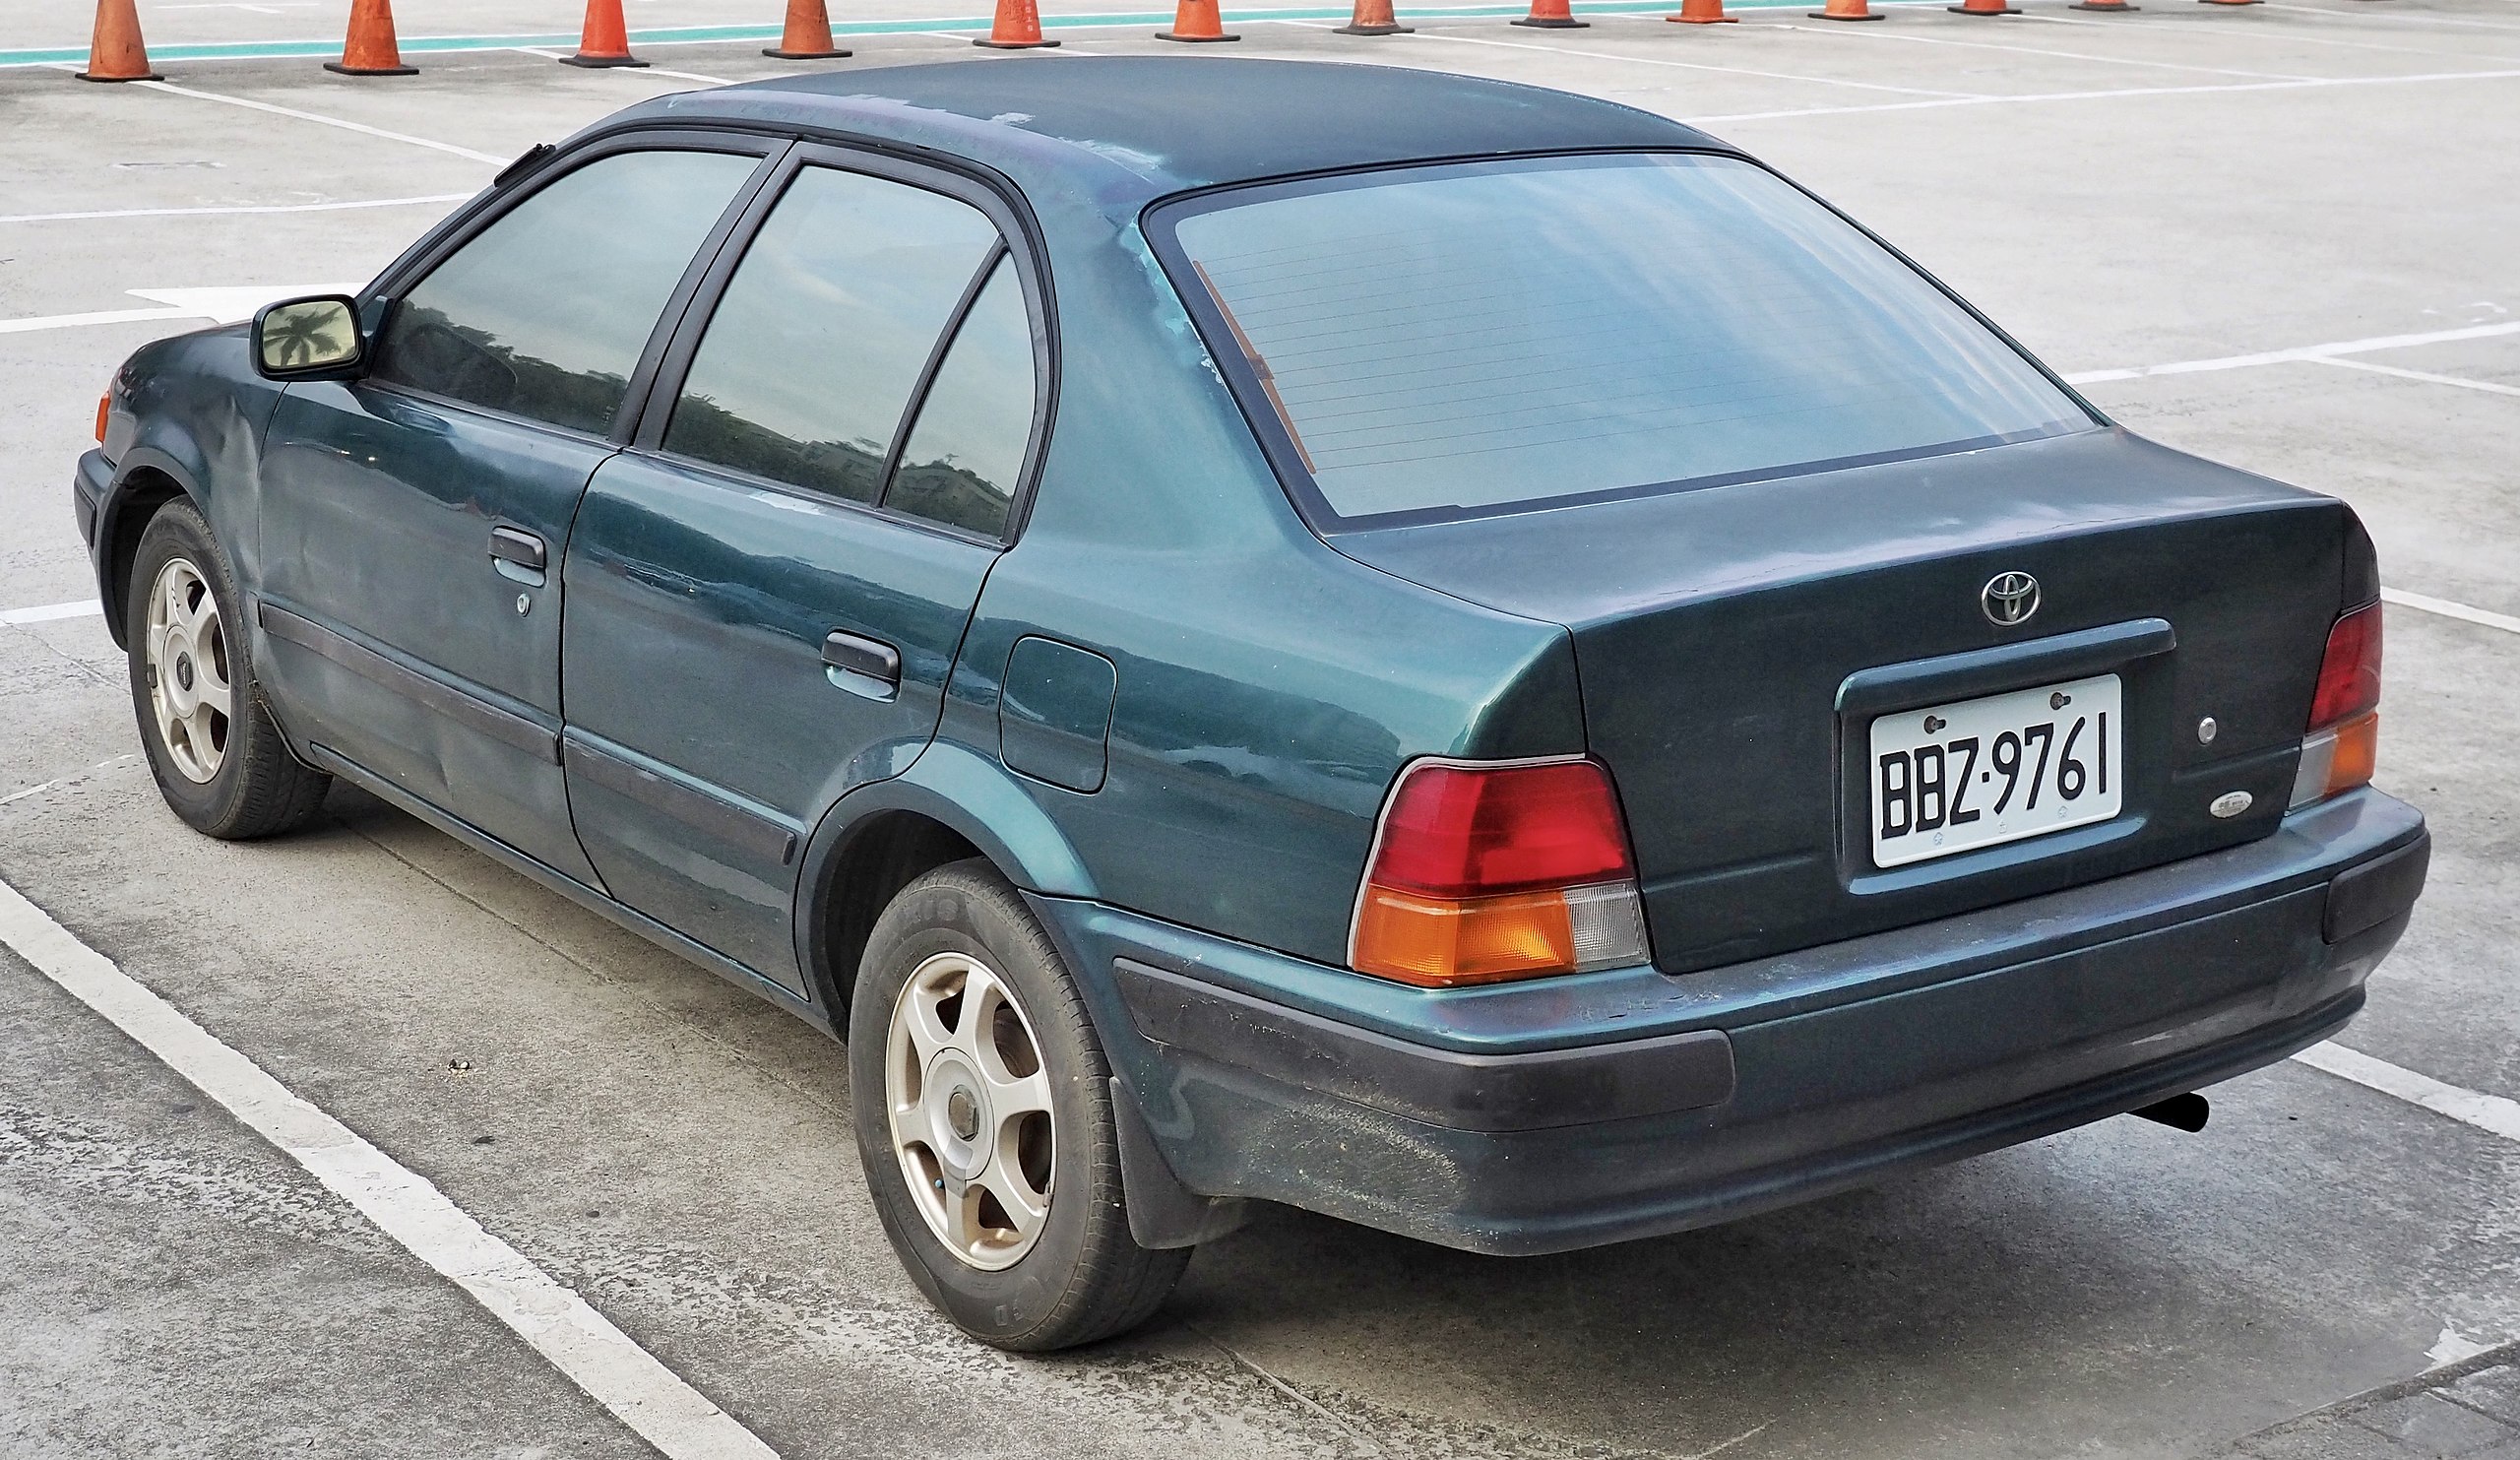 File:1995 Toyota Tercel (rear).jpg - Wikipedia